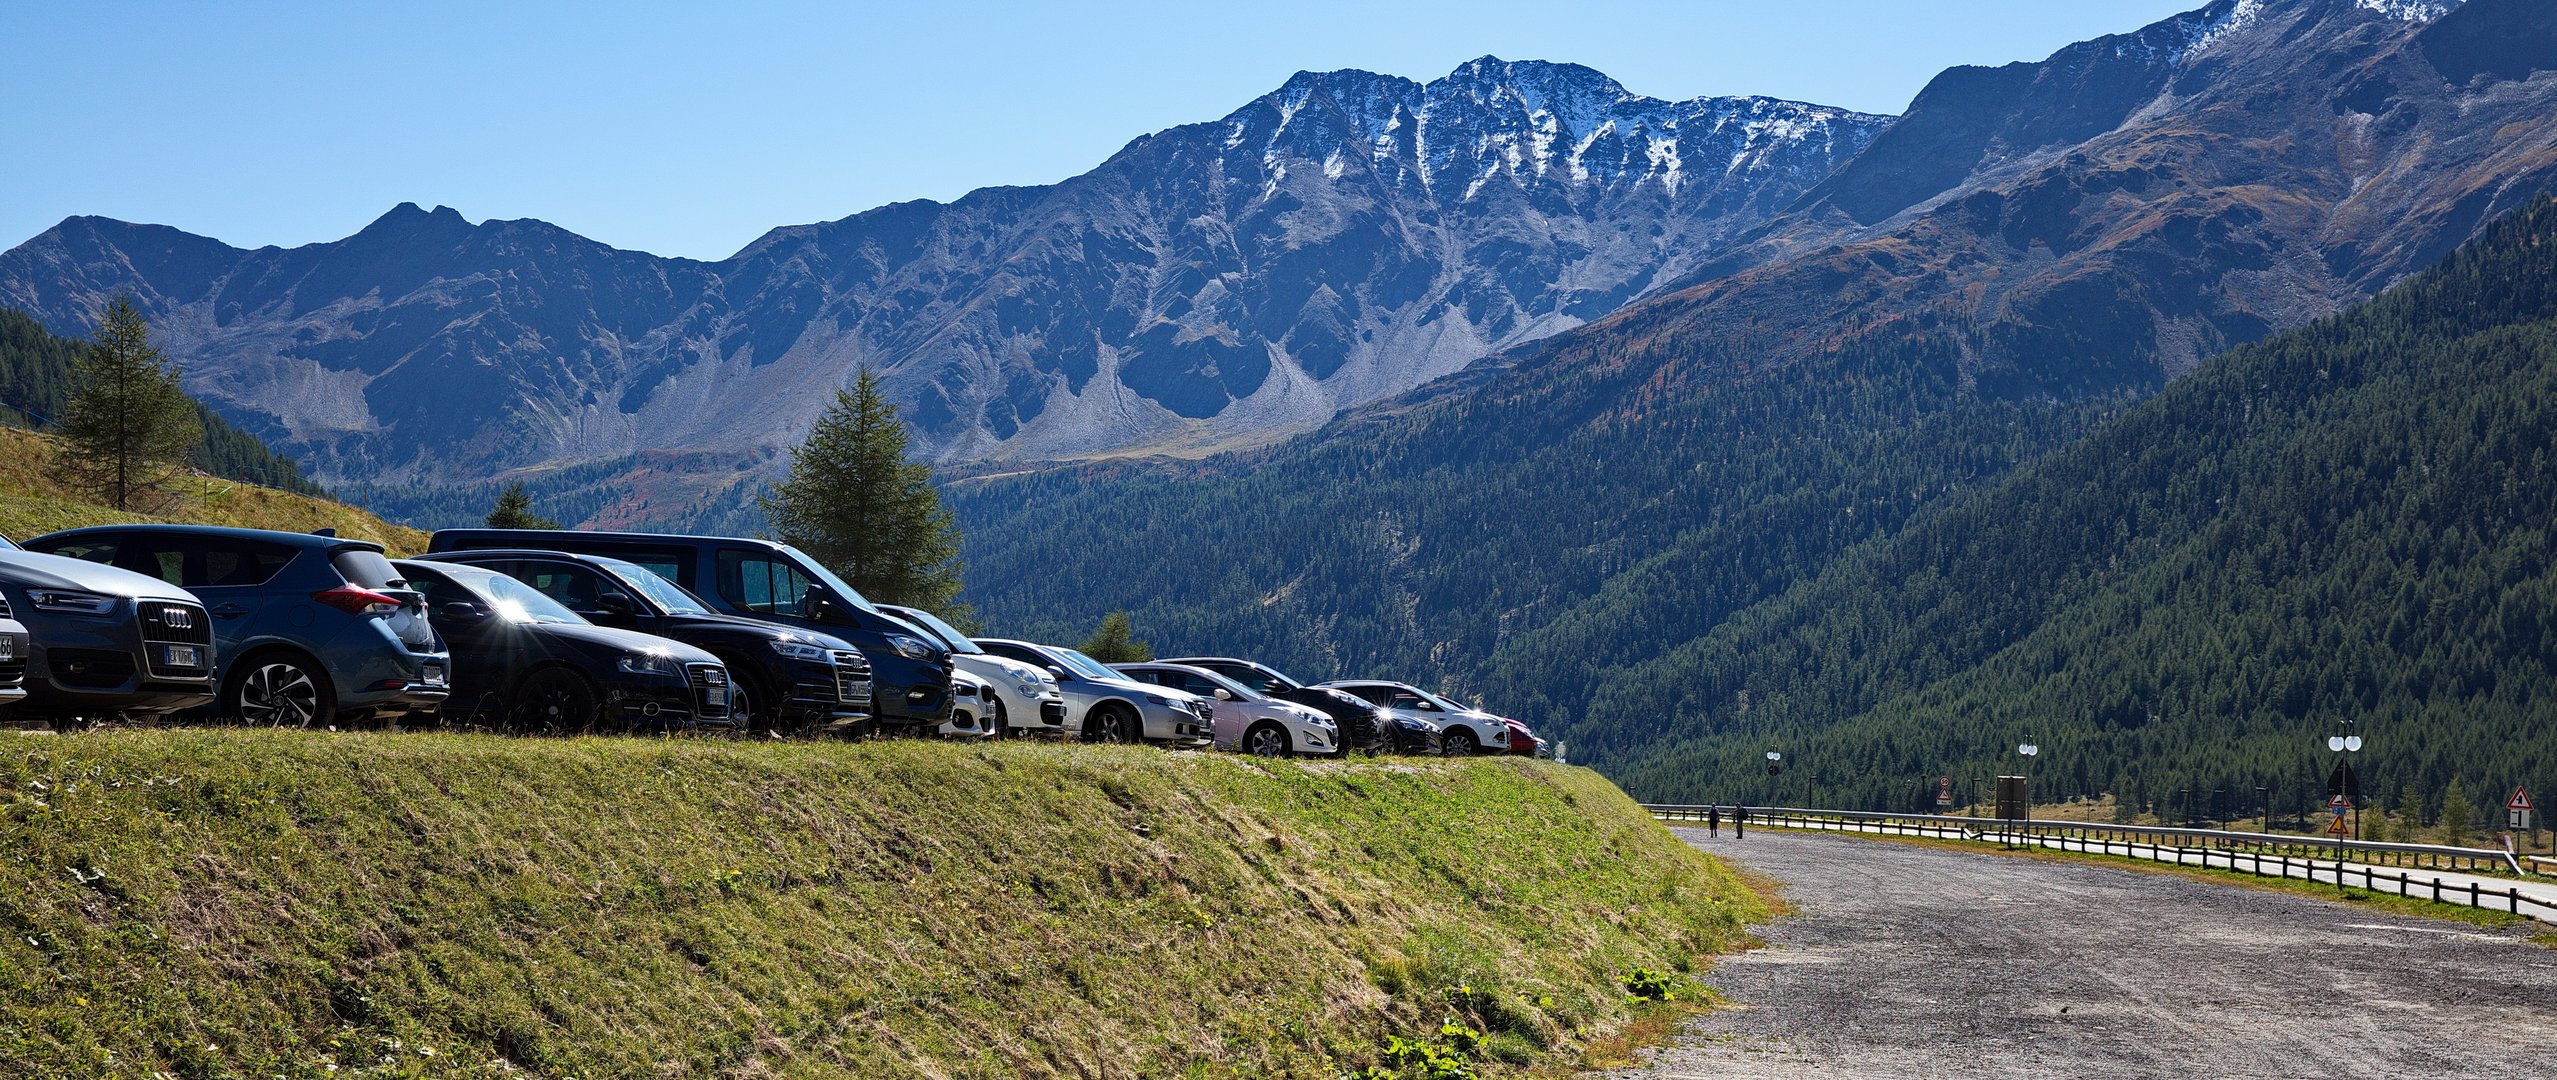 Mit dem Auto in die Berge - Kurzras, Schnalstal - Südtirol